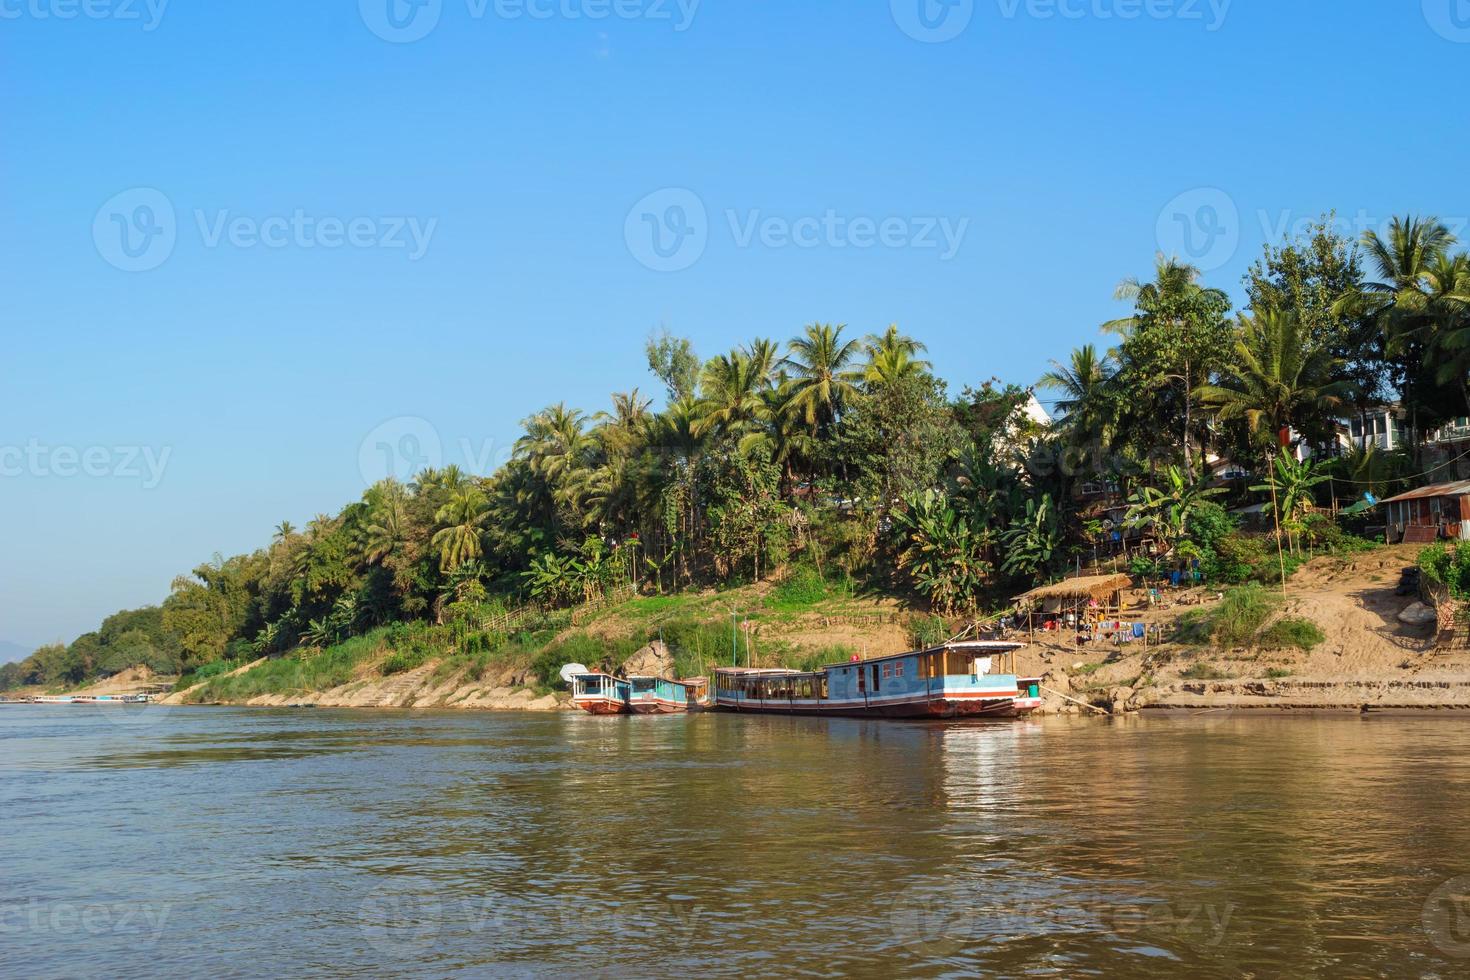 se på flodstrand med lång svans båtar, palmer träd och hus lokal- människor. mekong flod, luang prabang, laos. foto